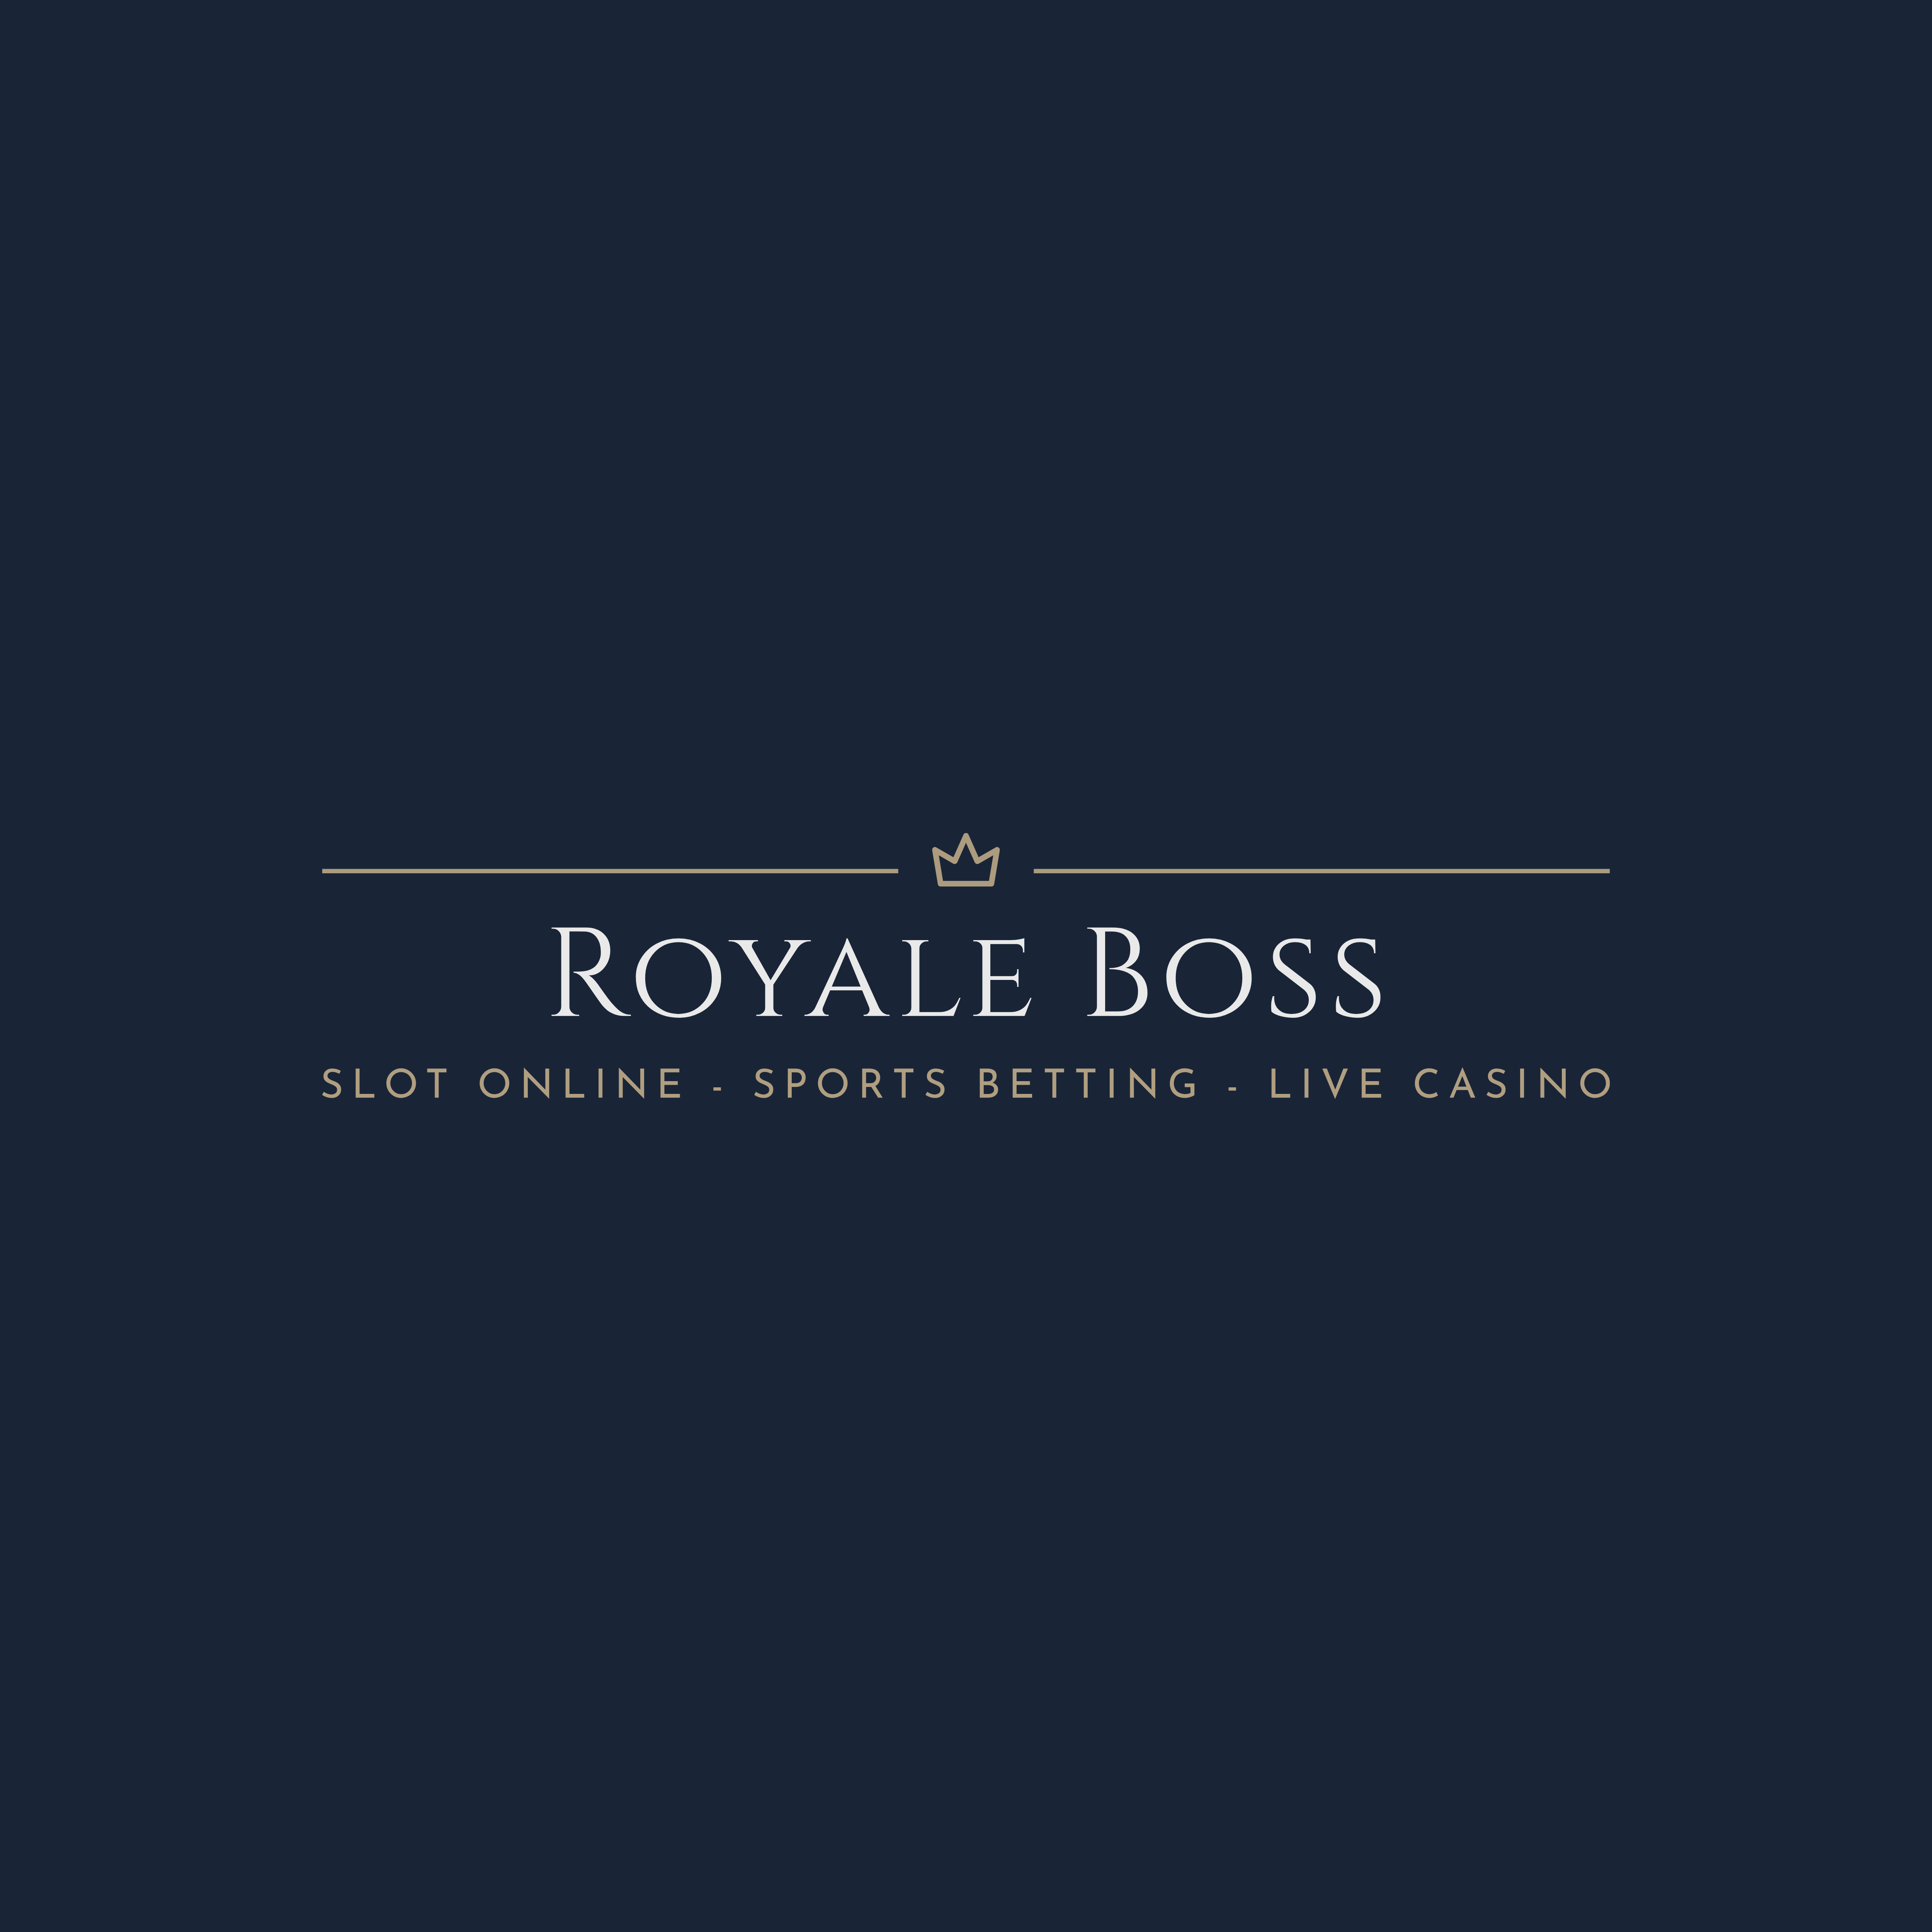 Royale Boss Slot Online Games Logo